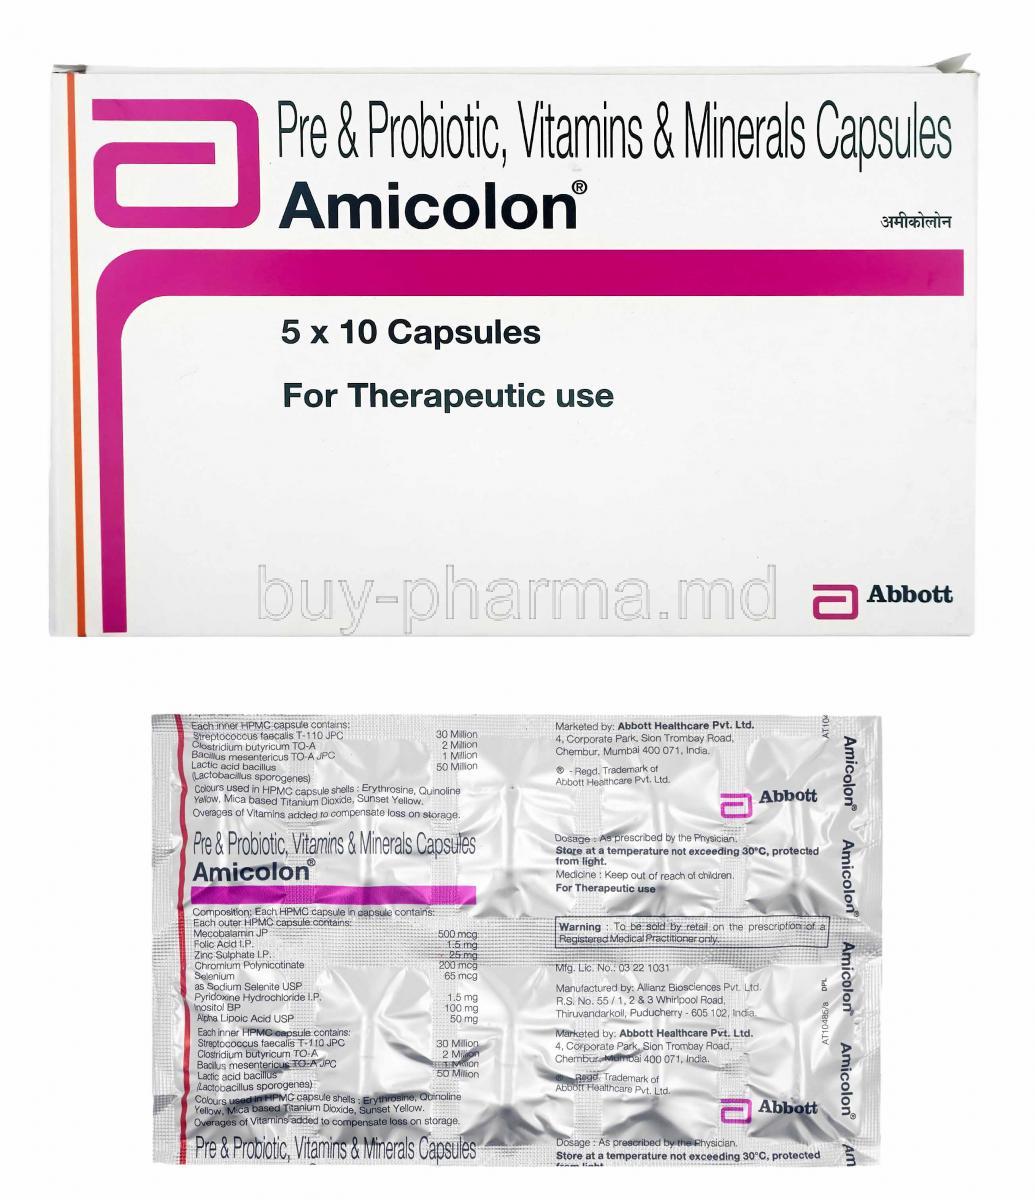 Amicolon box and capsules